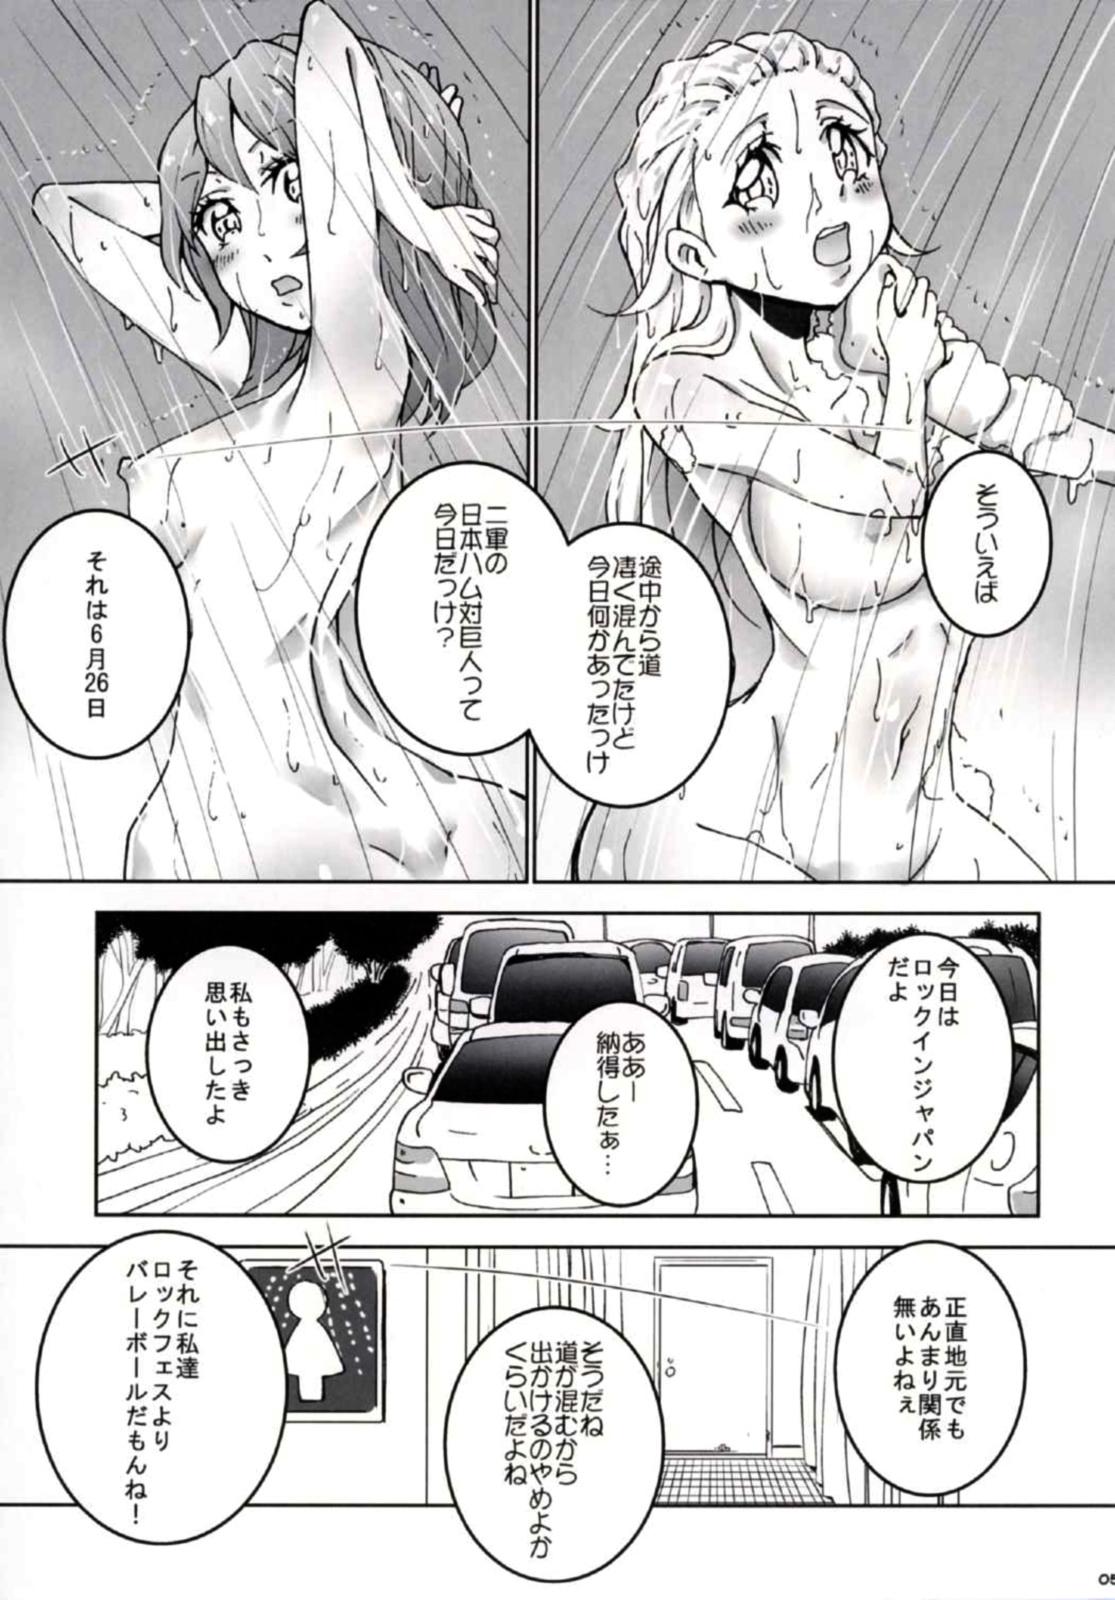 Tied (C90) [Ai no Kura (Takahagi Kemono)] 8-gatsu 14-ka no Tonari no Shi (Girls und Panzer) - Girls und panzer Masturbandose - Page 6